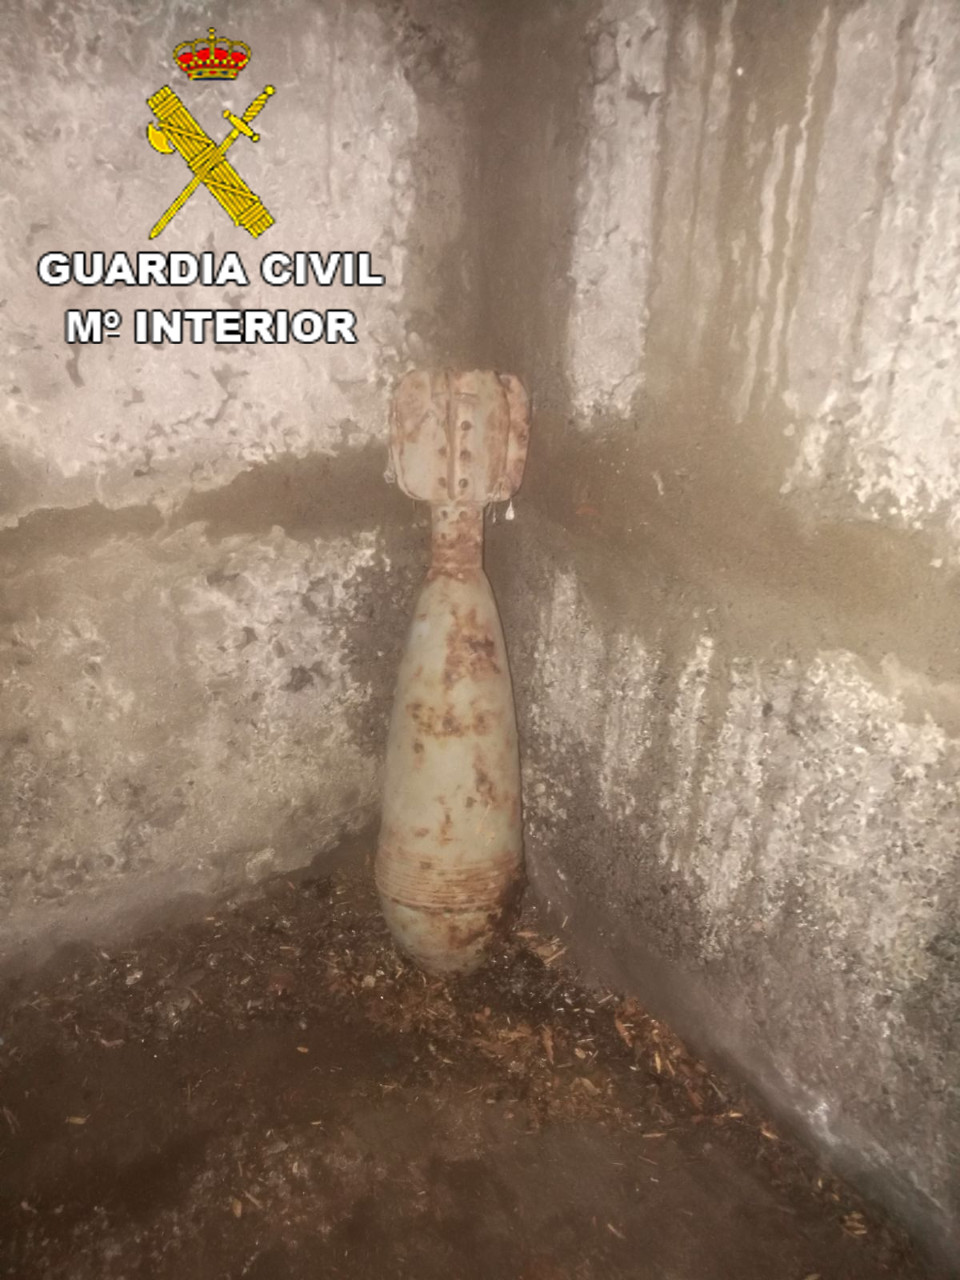 Mörsergranate in Valleseco nur Attrappe